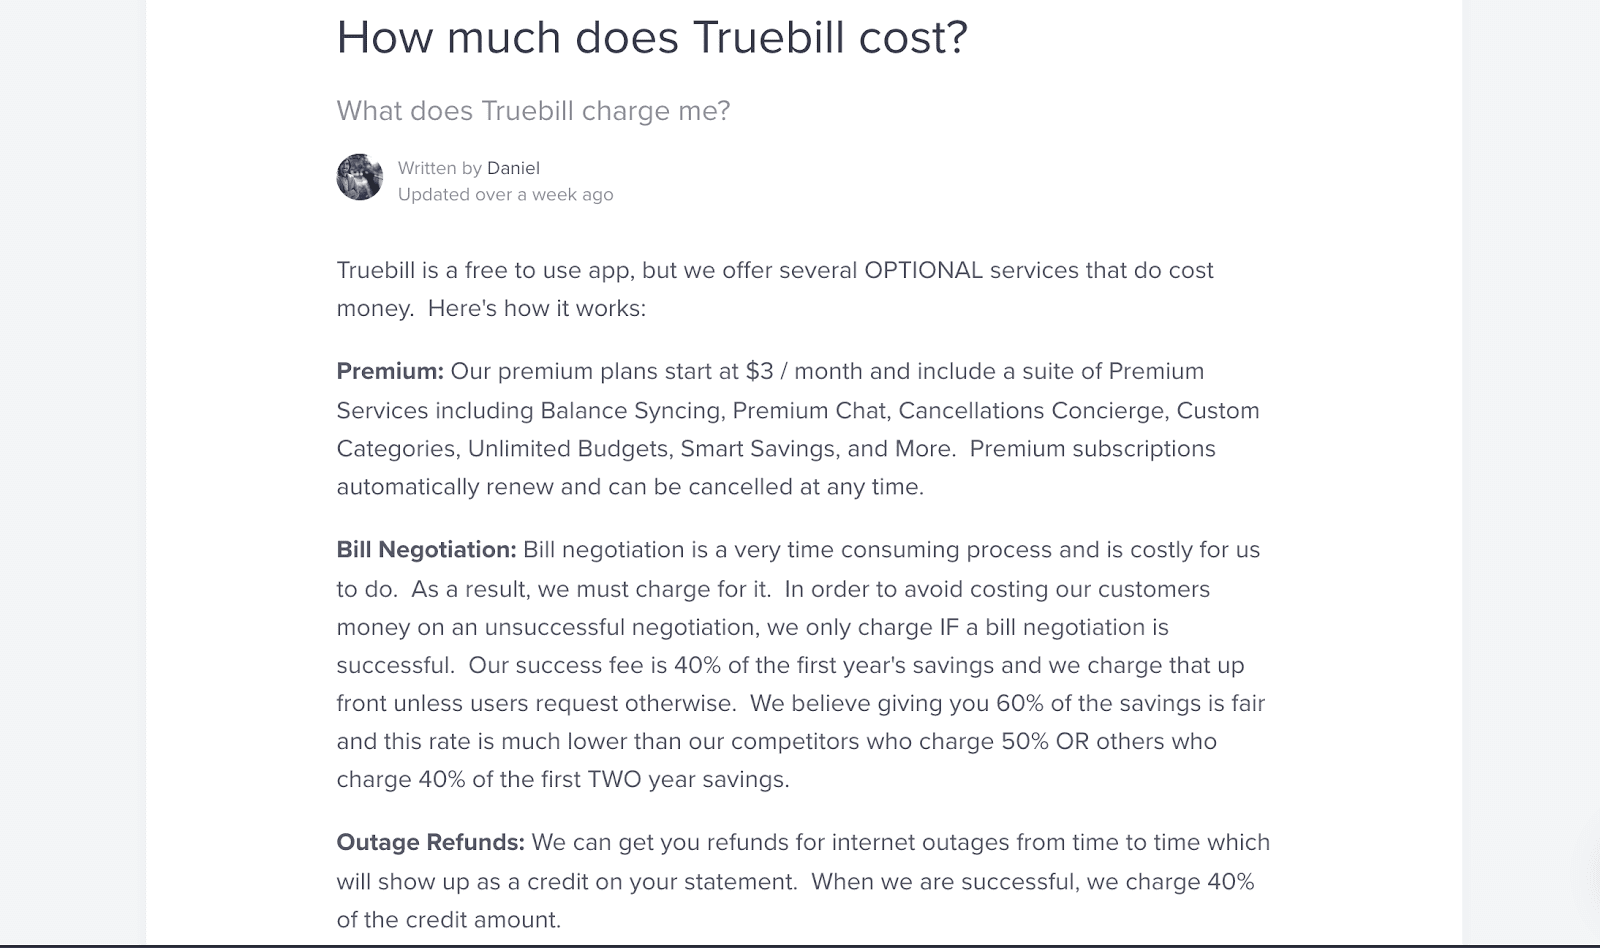 Truebill cost